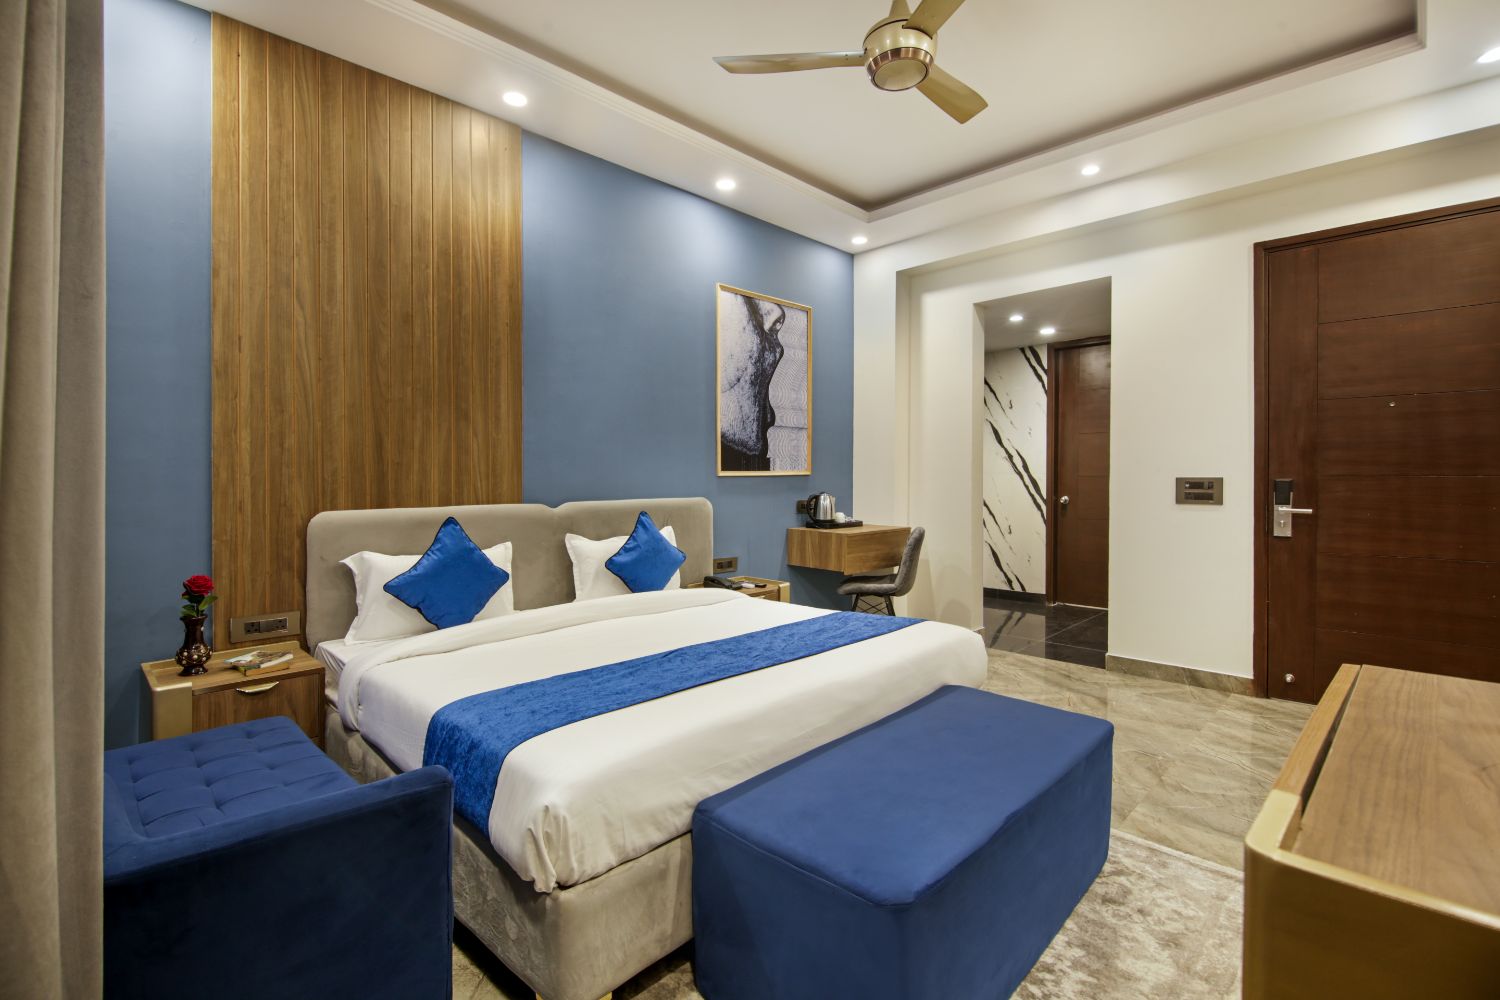 Hotel In Noida Near Sec143, Noida